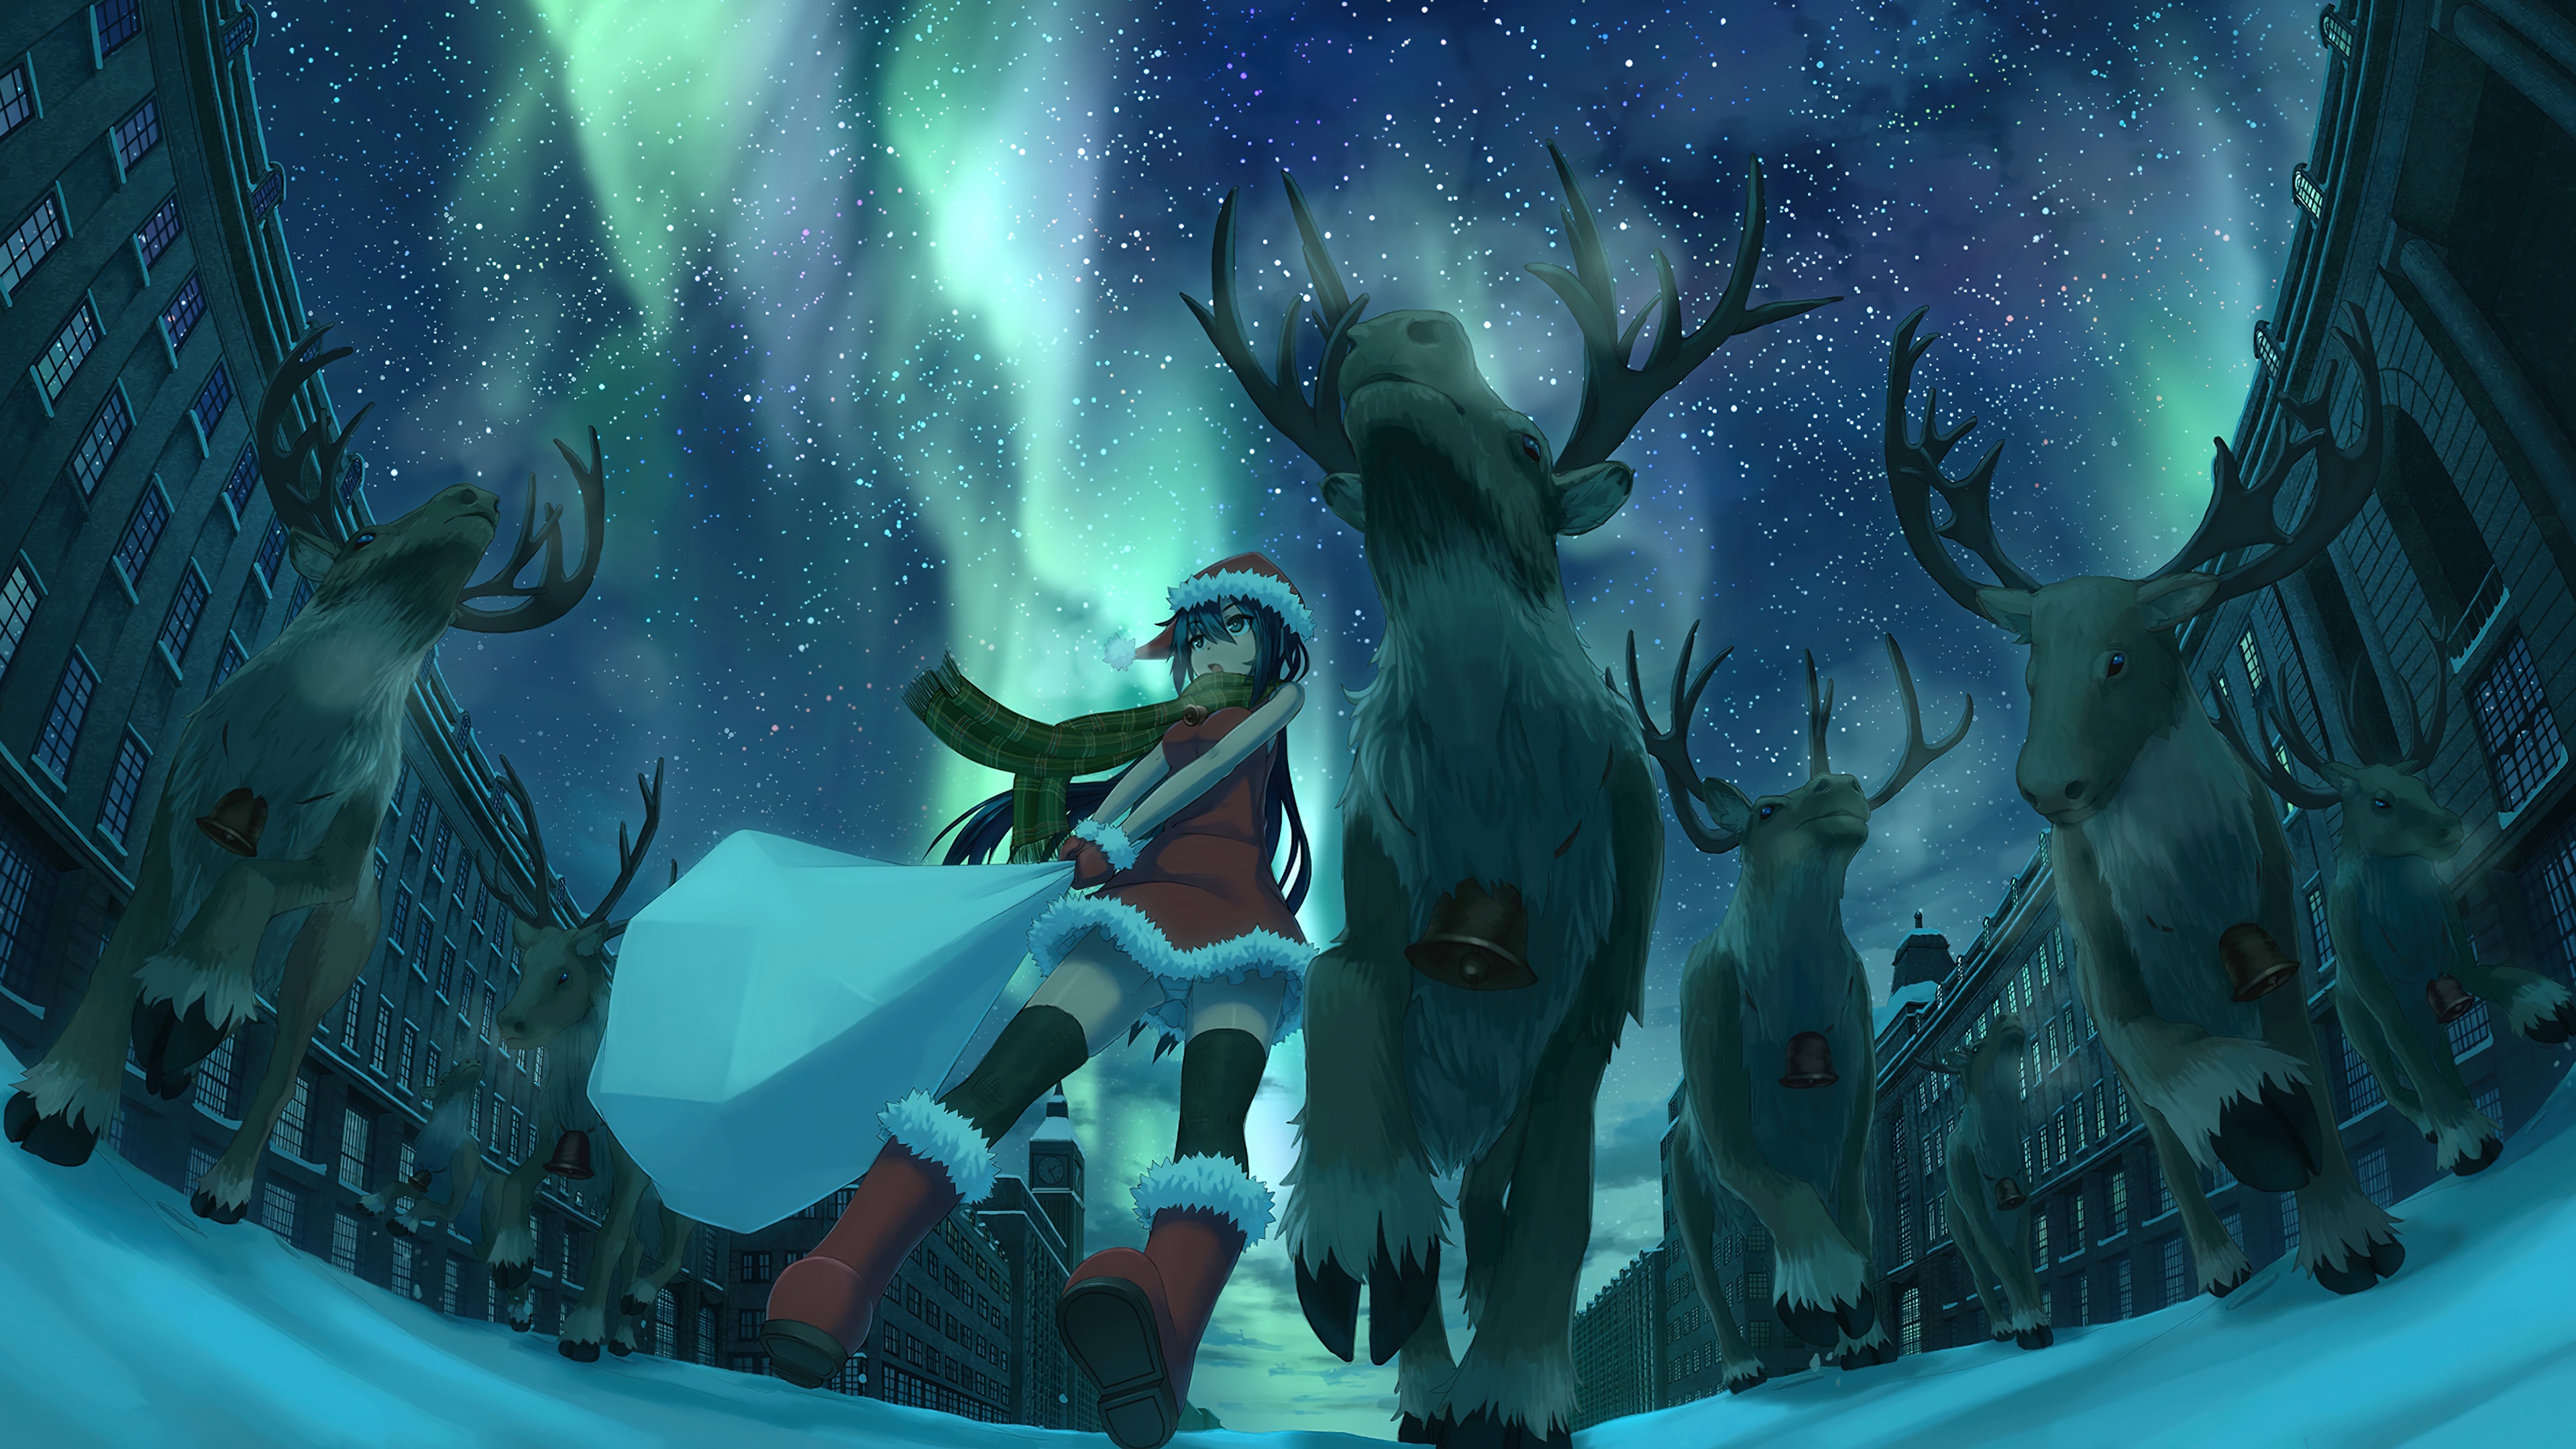 Fondos de pantalla Navidad reno anime santa niña aurora boreal